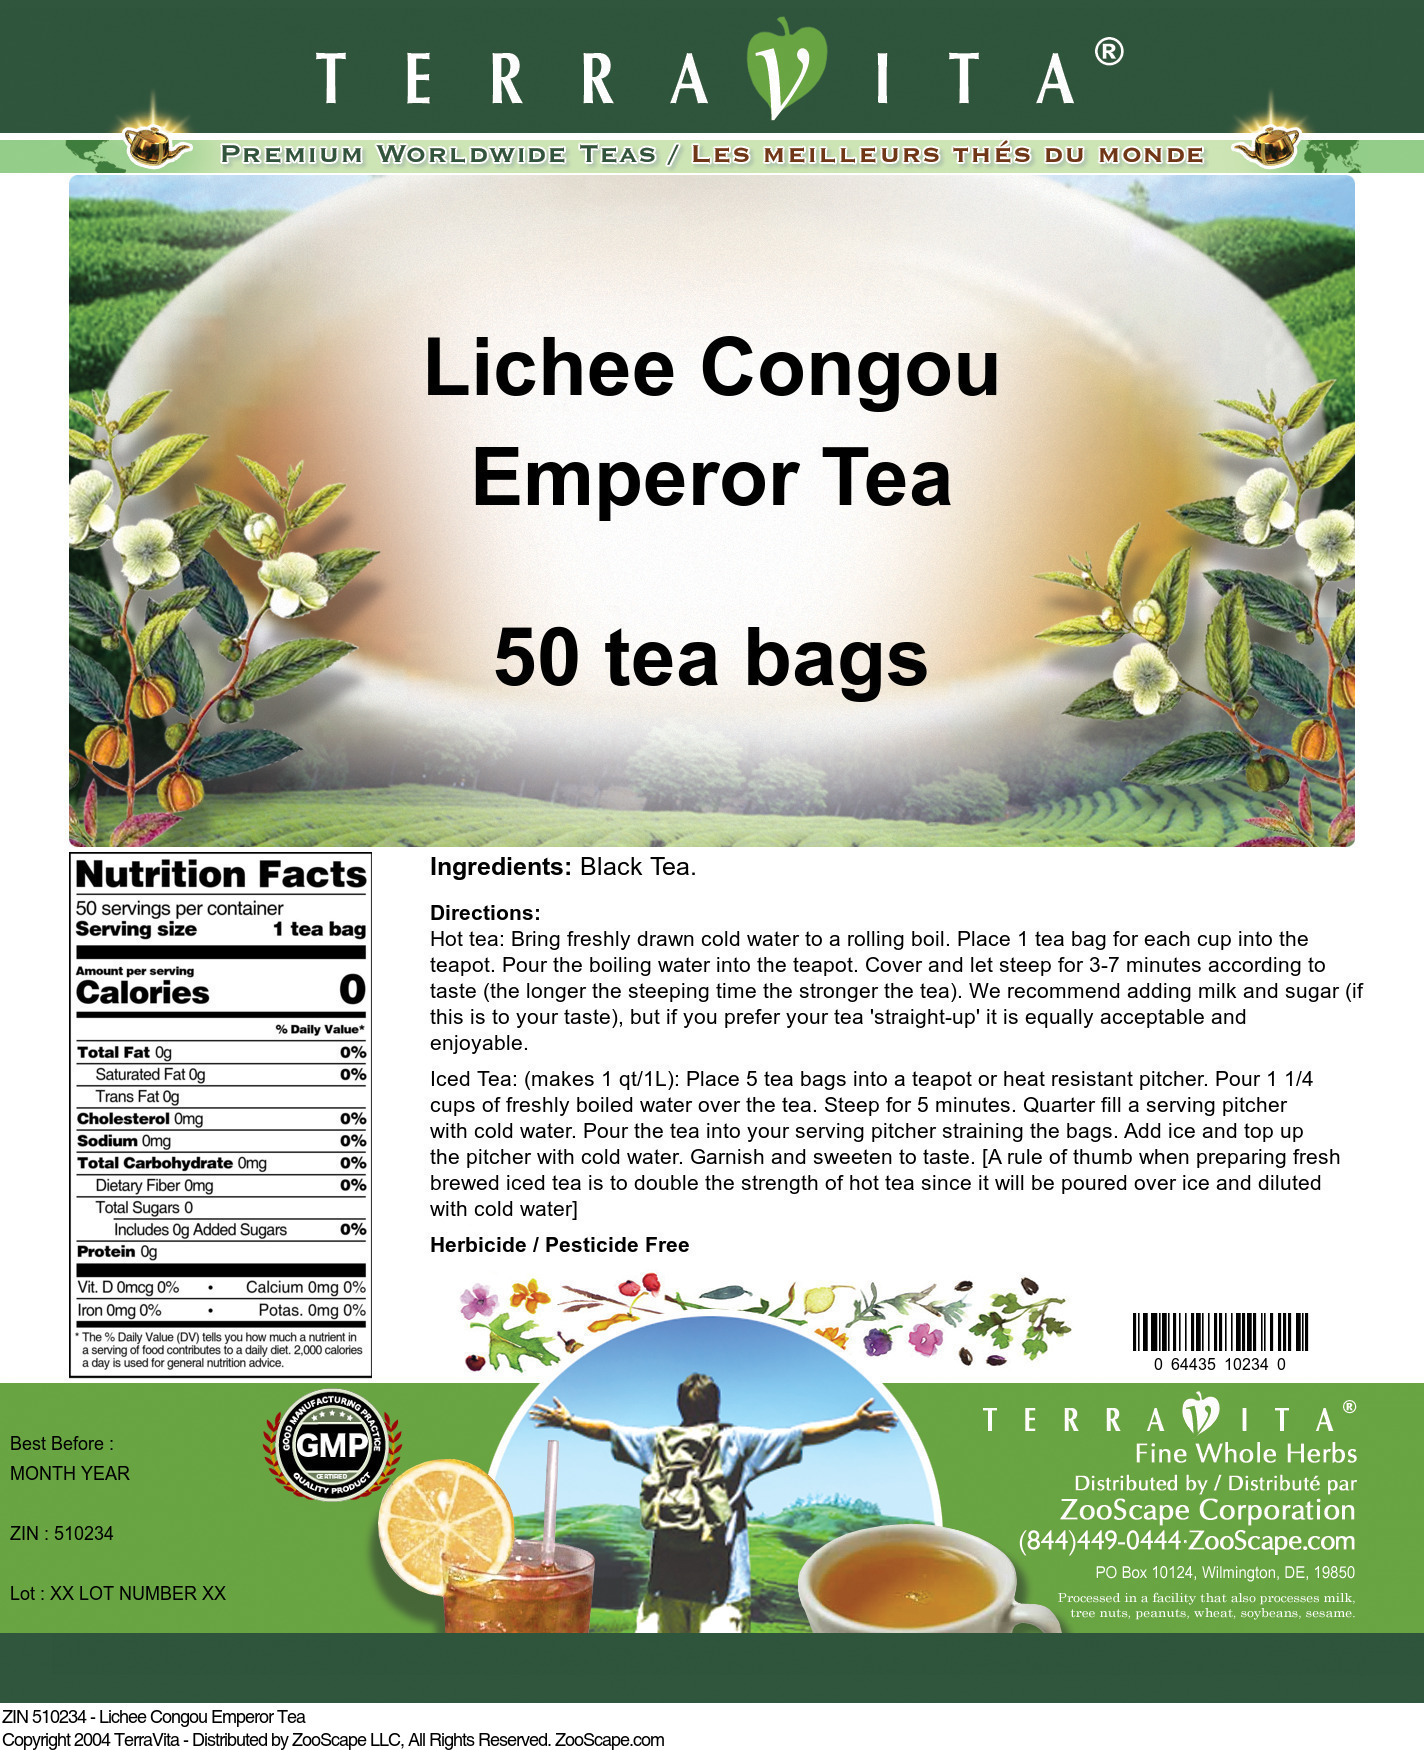 Lichee Congou Emperor Tea - Label